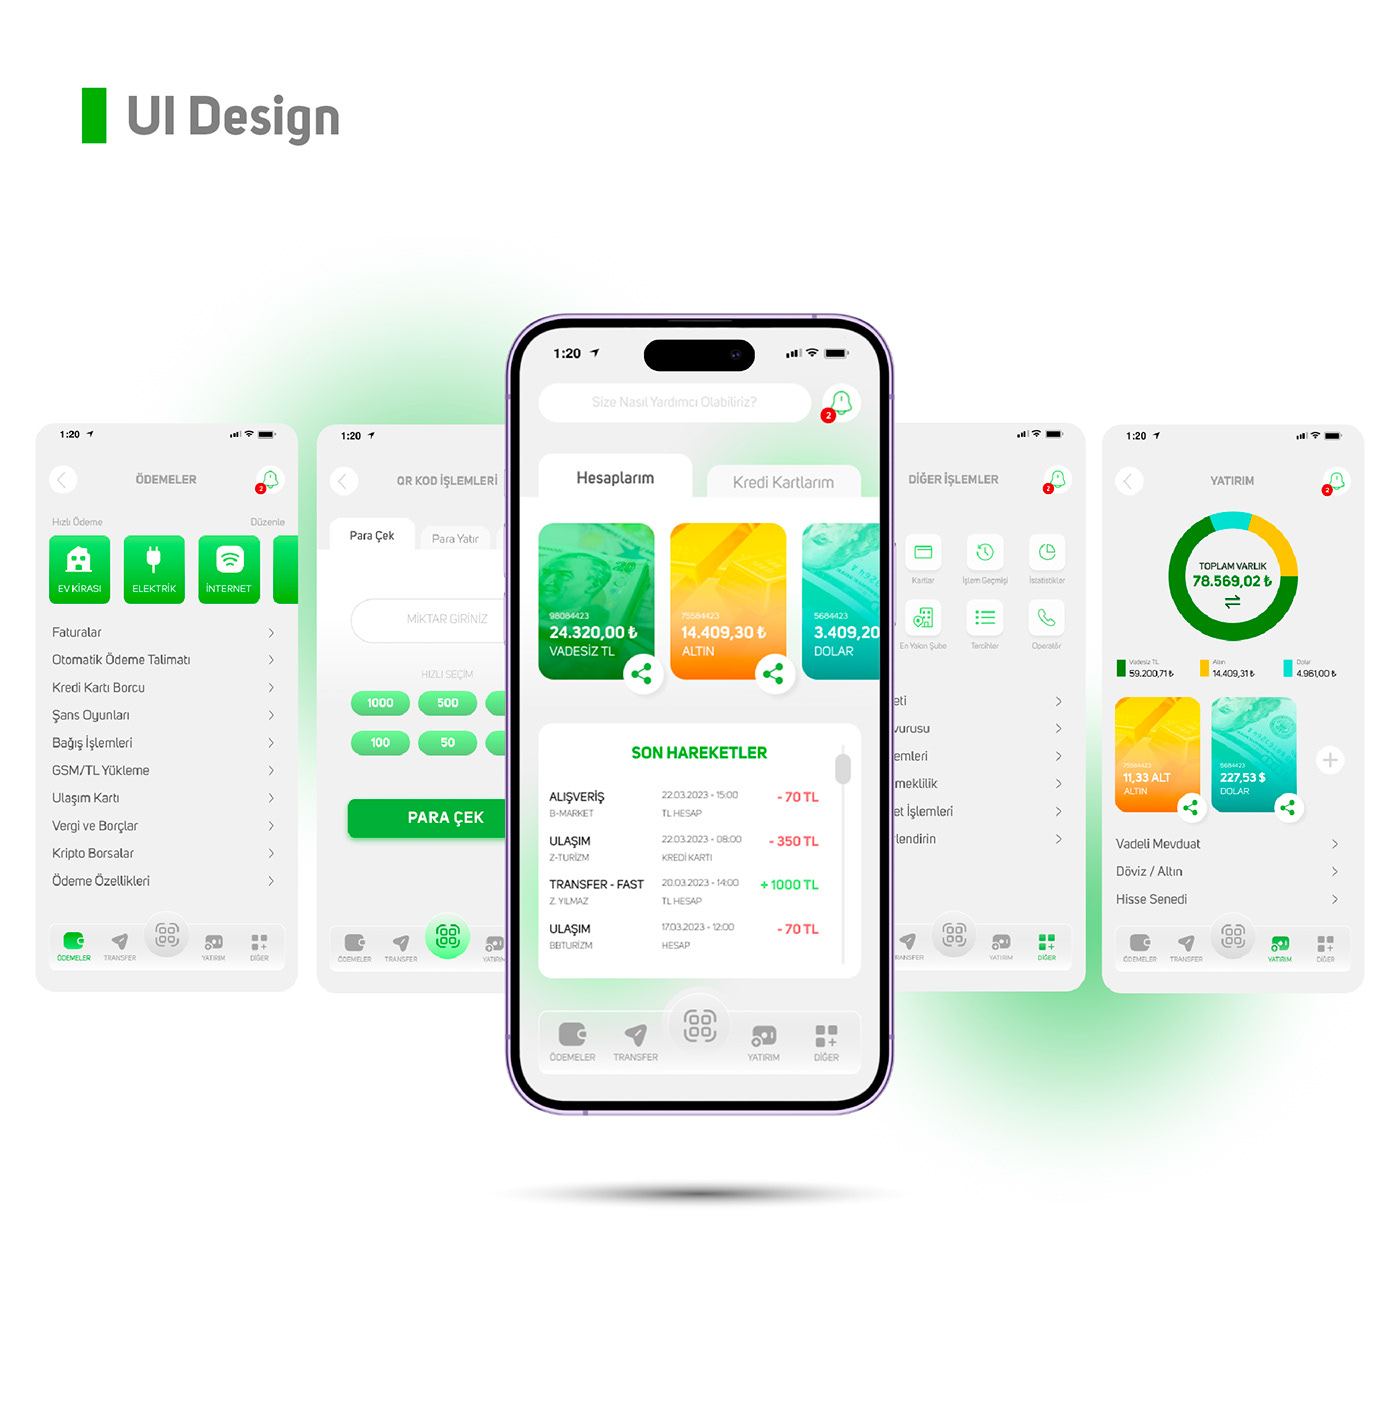 banking app banking website Figma mobile app design mobile banking ui design UI/UX user interface UX design ux study case